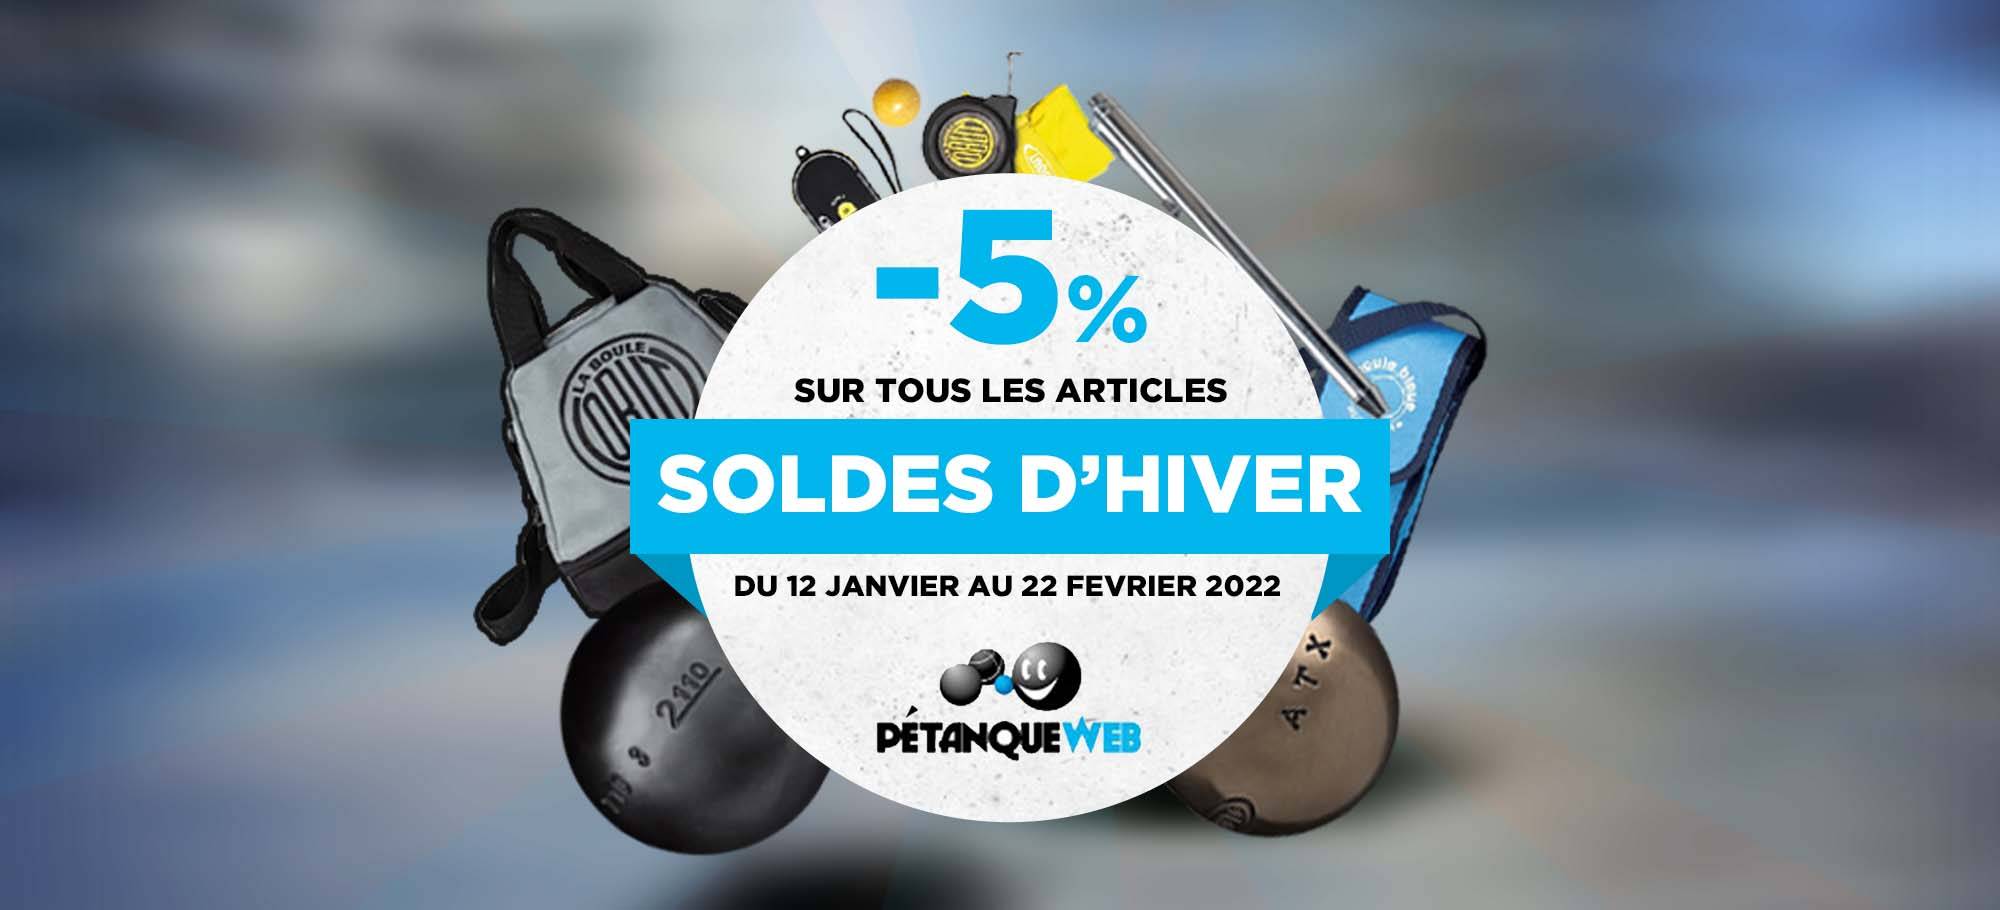 You are currently viewing Profitez des soldes d’hiver chez Pétanque web